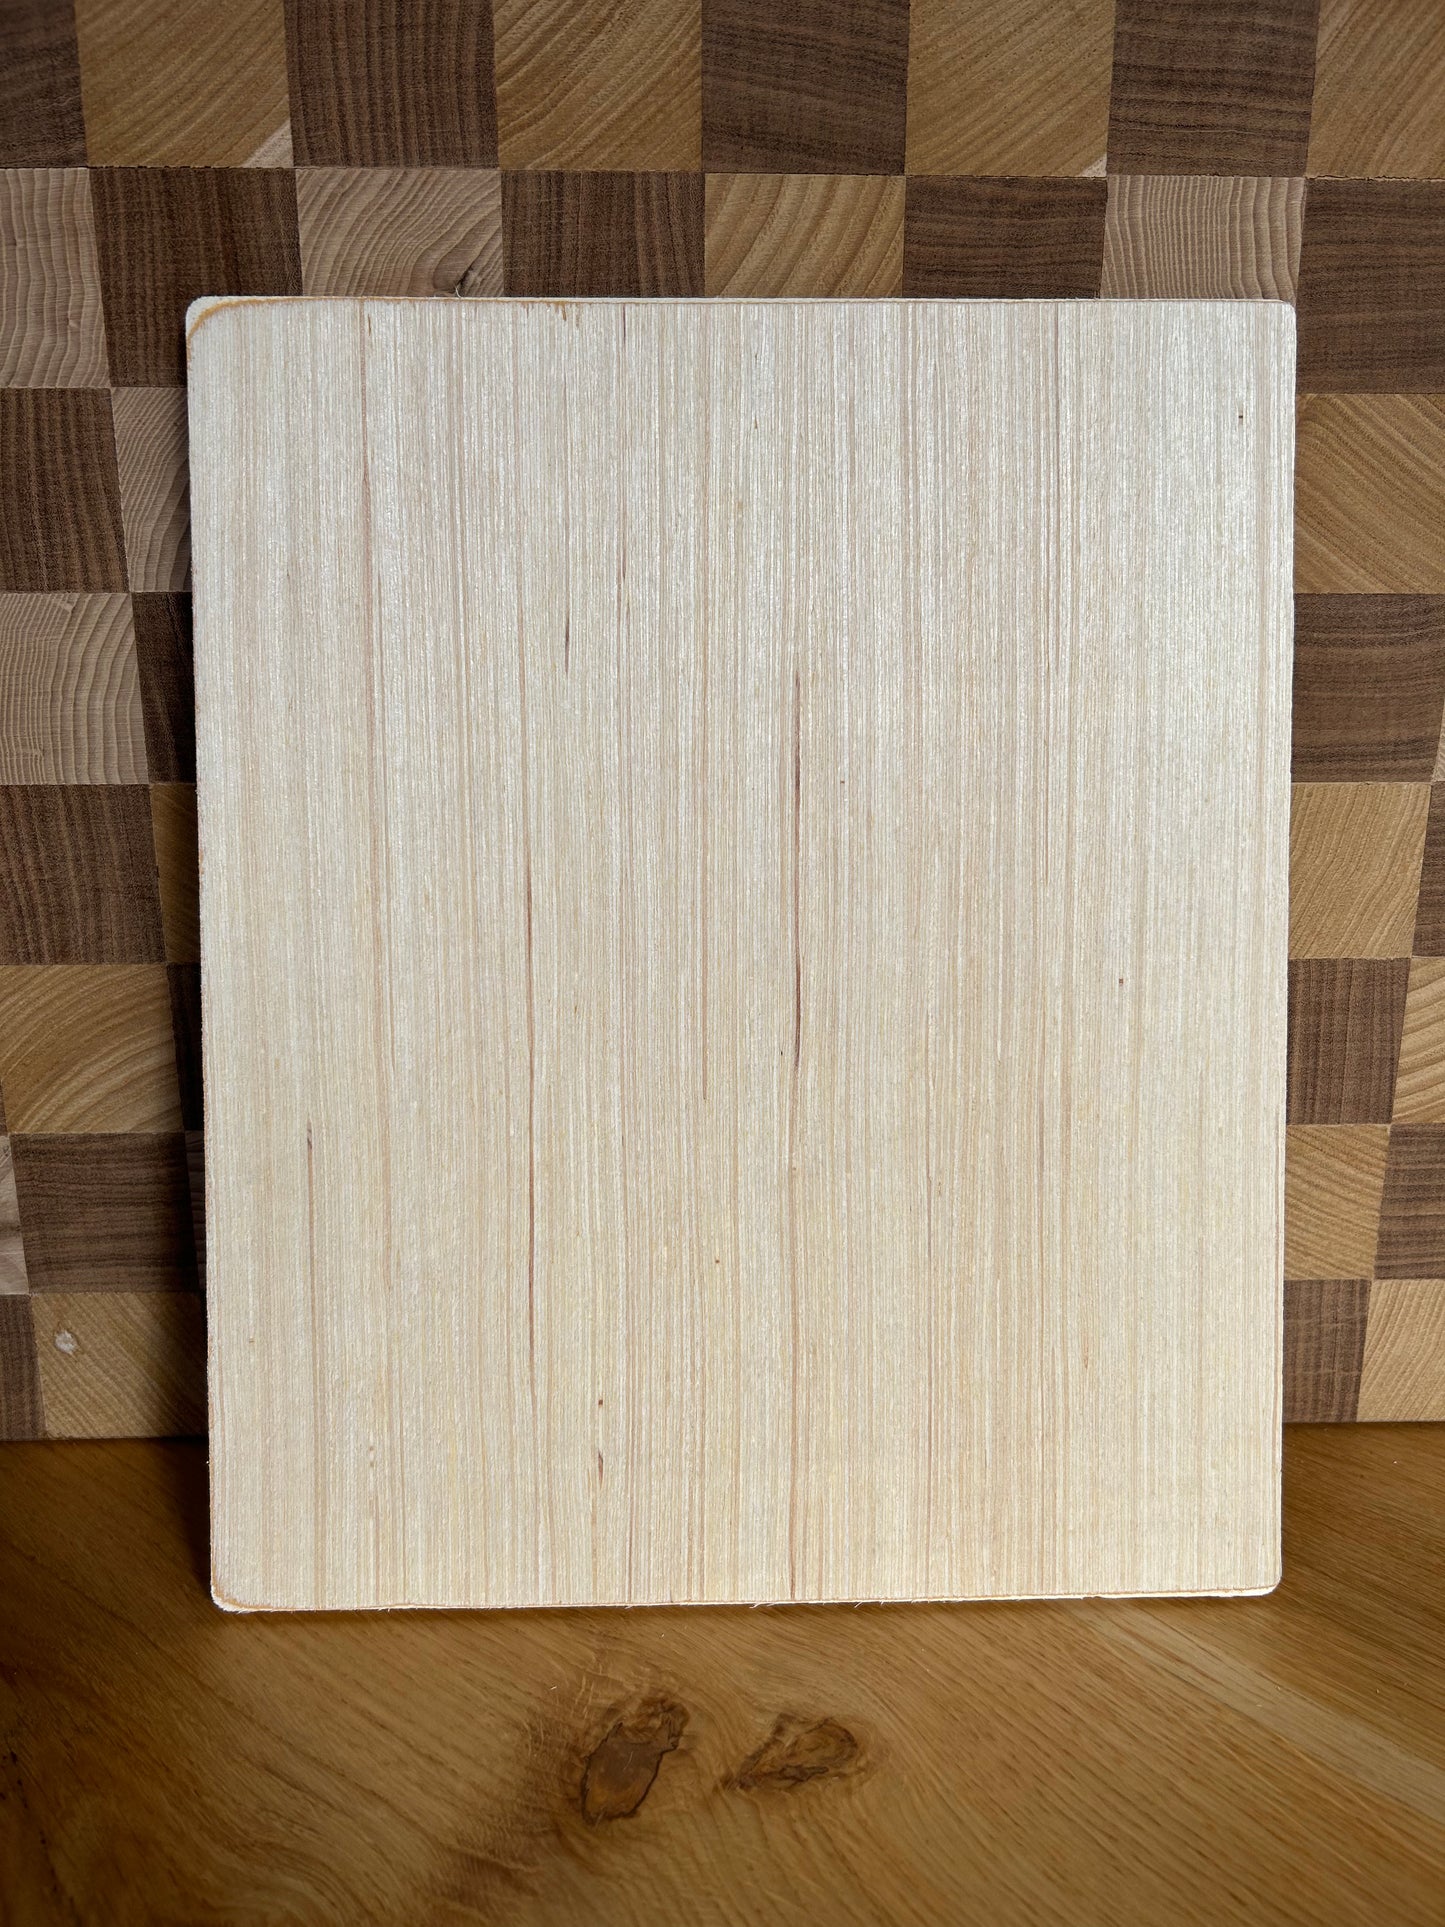 Rewood - Forme in legno per creare - Spessore 10 mm